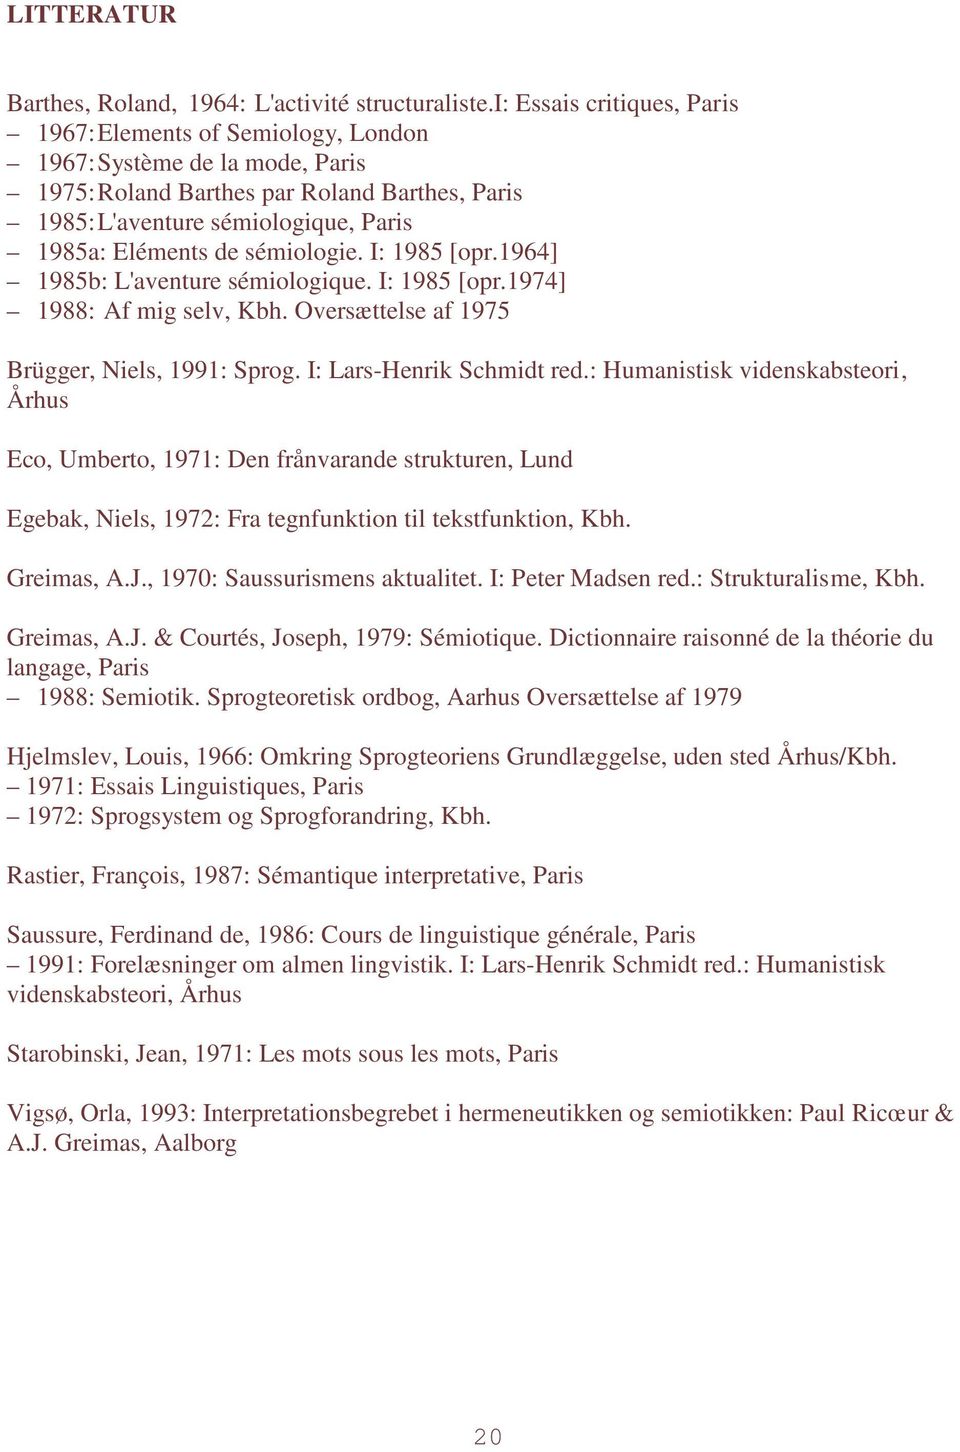 sémiologie. I: 1985 [opr.1964] 1985b: L'aventure sémiologique. I: 1985 [opr.1974] 1988: Af mig selv, Kbh. Oversættelse af 1975 Brügger, Niels, 1991: Sprog. I: Lars-Henrik Schmidt red.